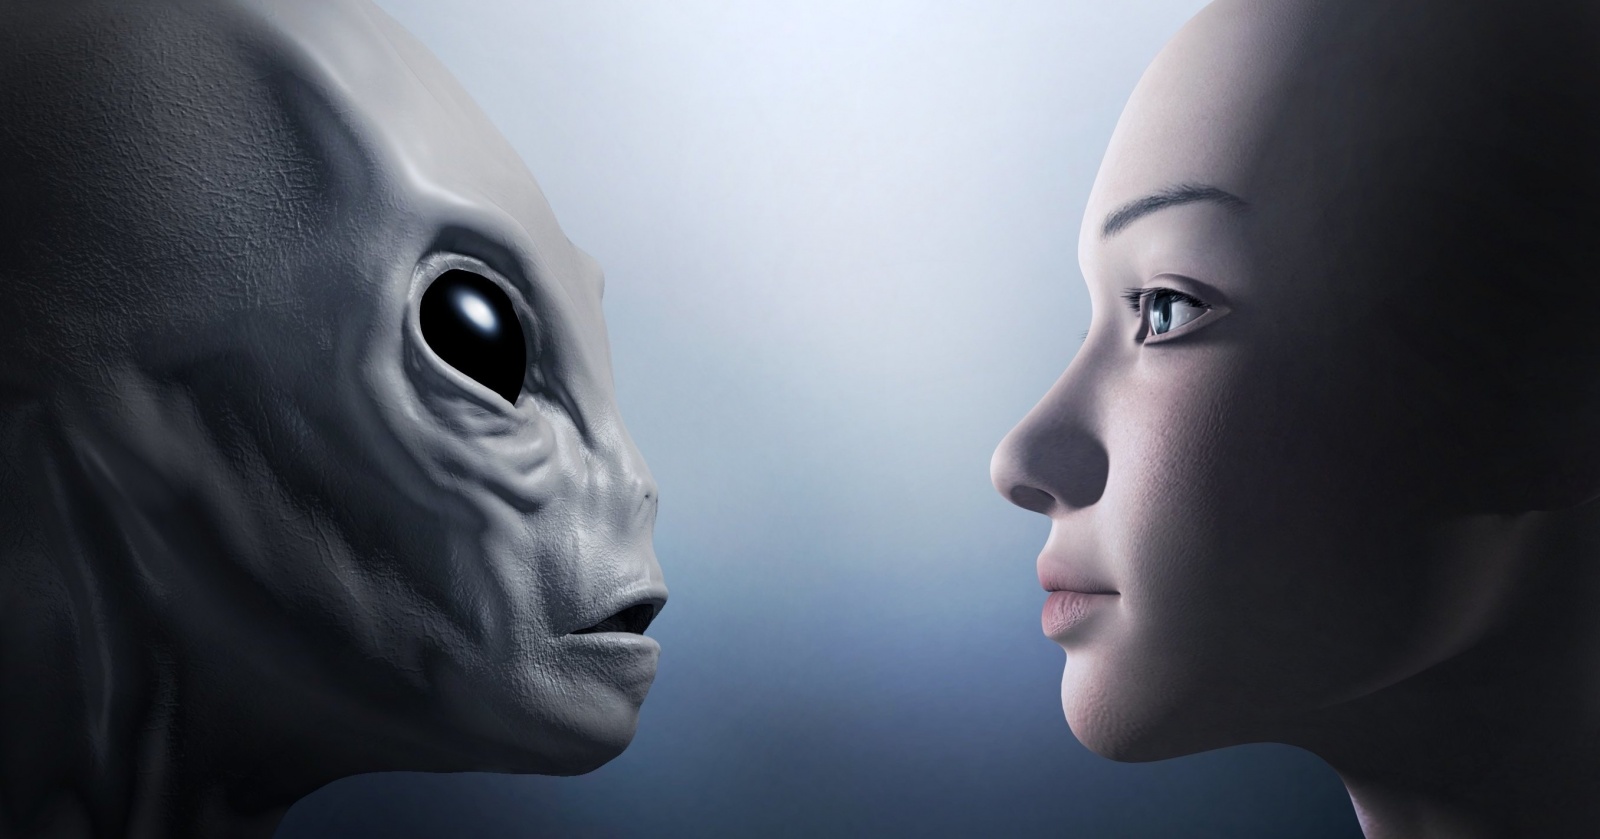 Узнай, кто ты: человек, андроид или инопланетянин?